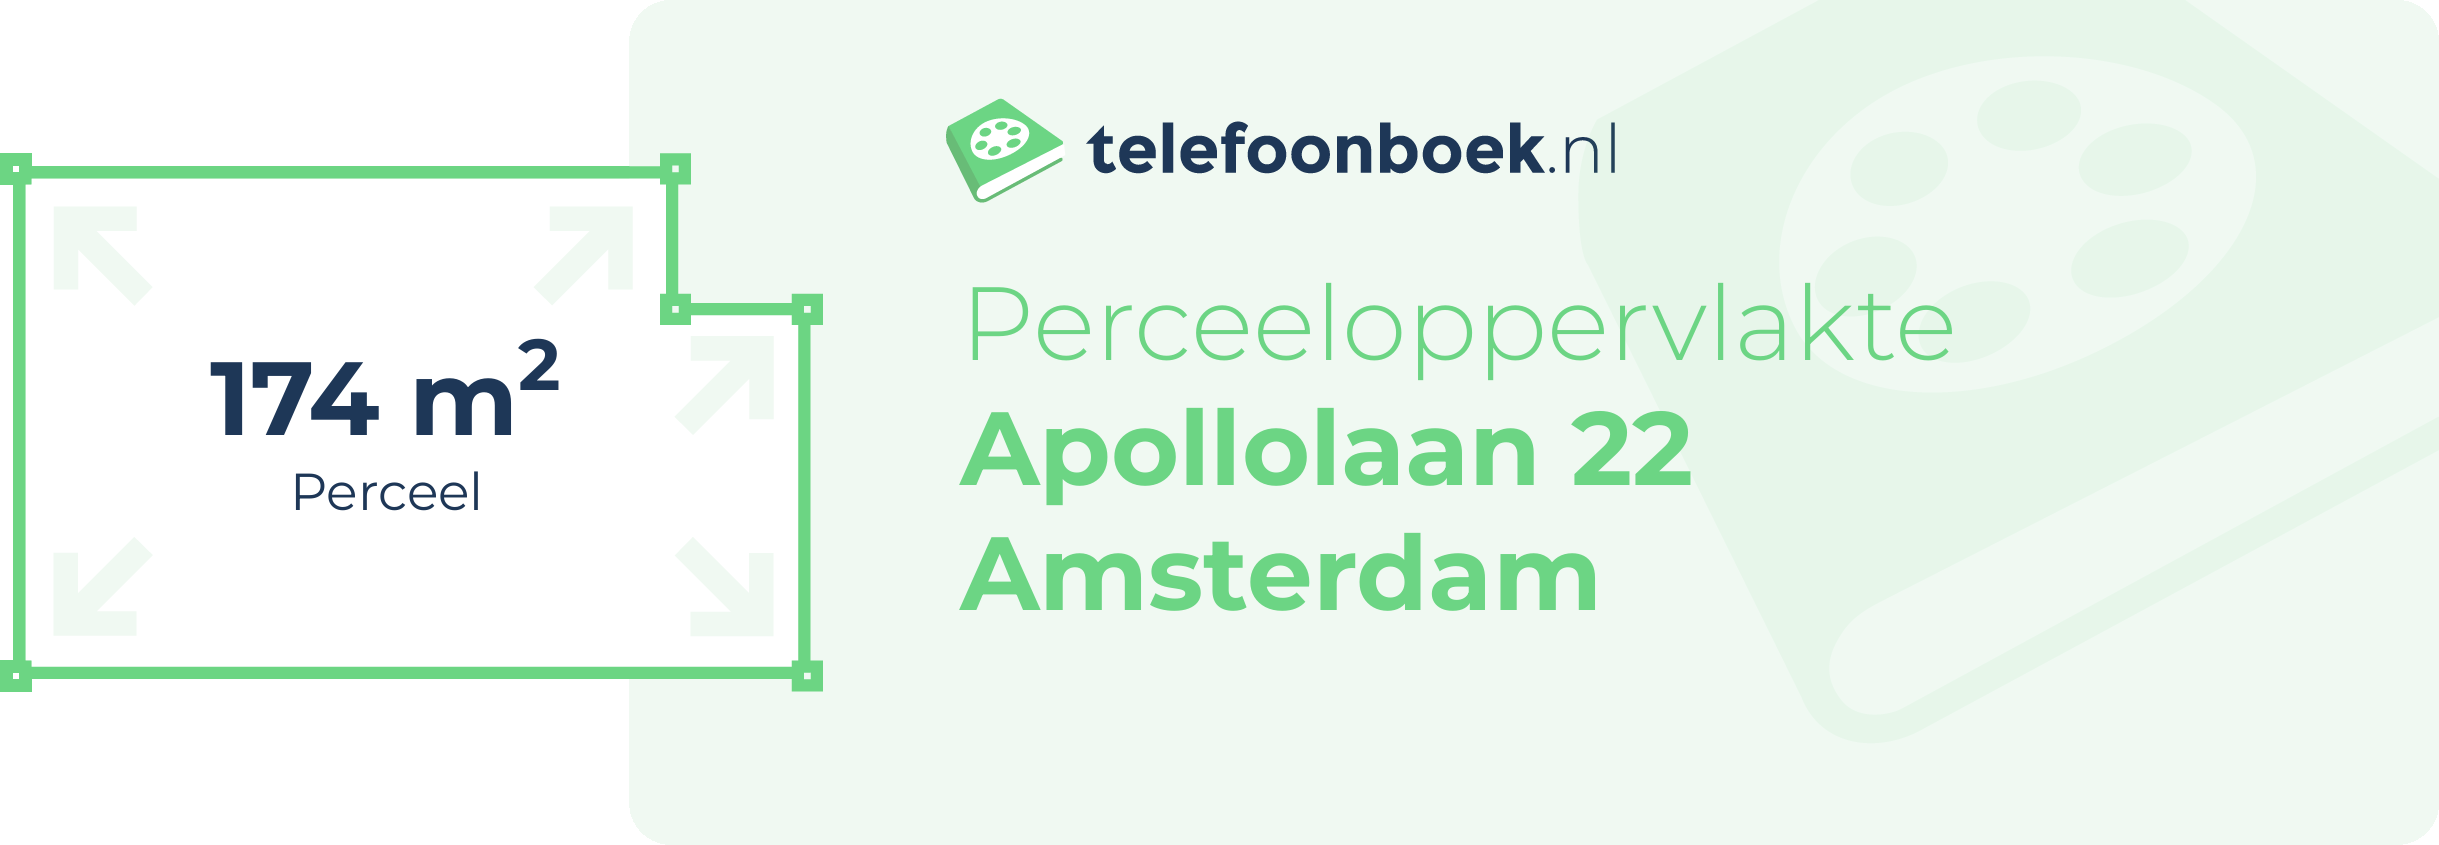 Perceeloppervlakte Apollolaan 22 Amsterdam